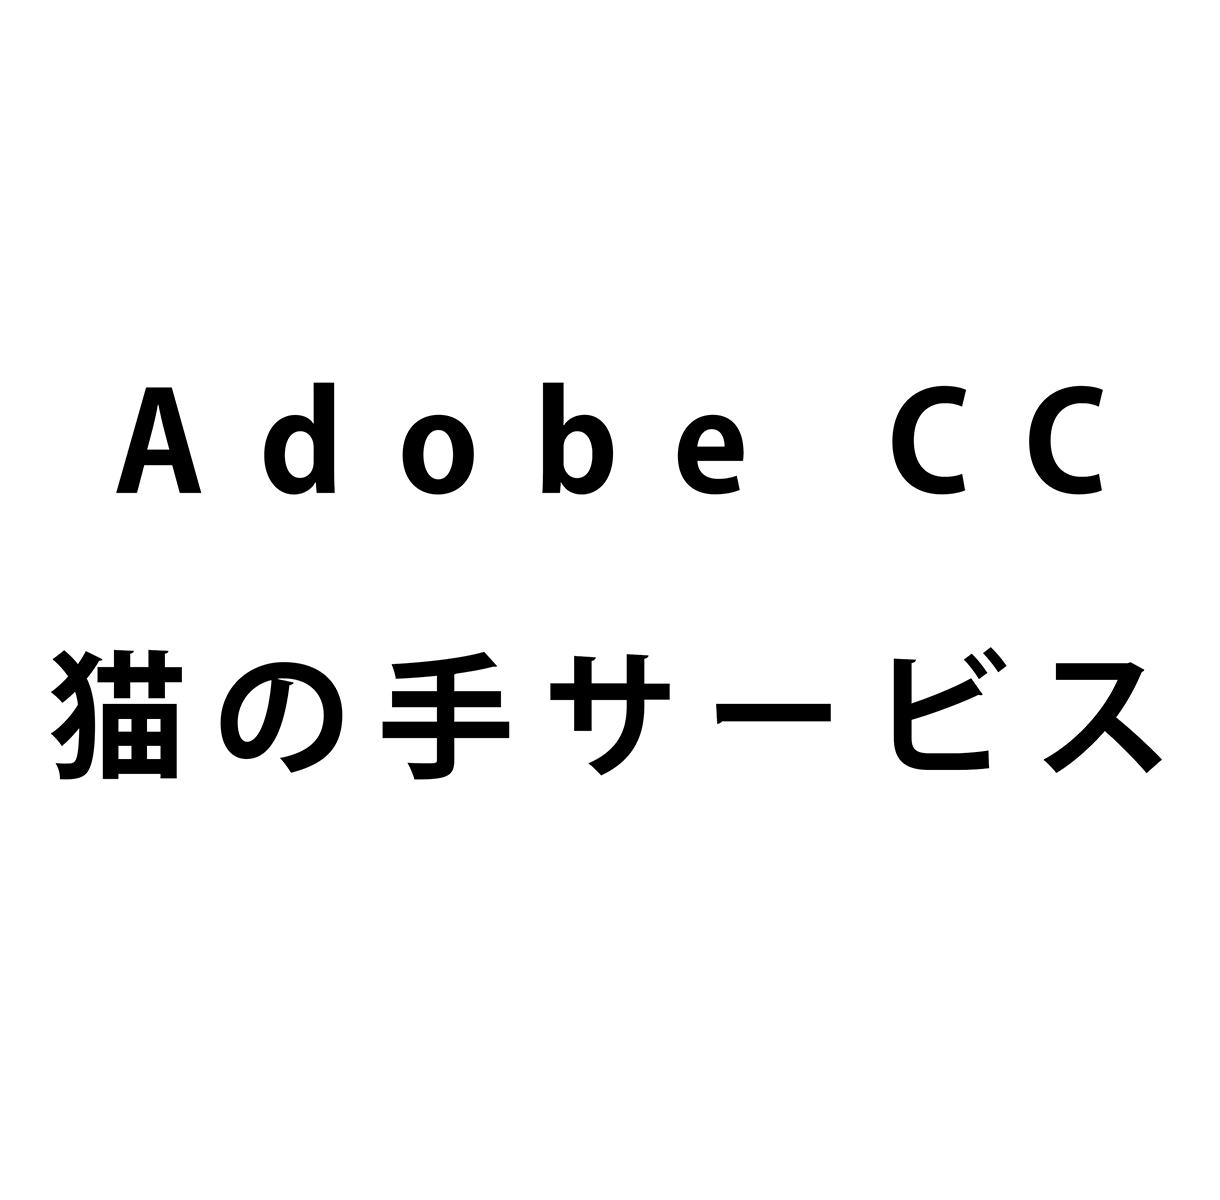 アドビ・クリエイティブクラウドで簡単な作業をします Adobe CC 猫の手サービス イメージ1